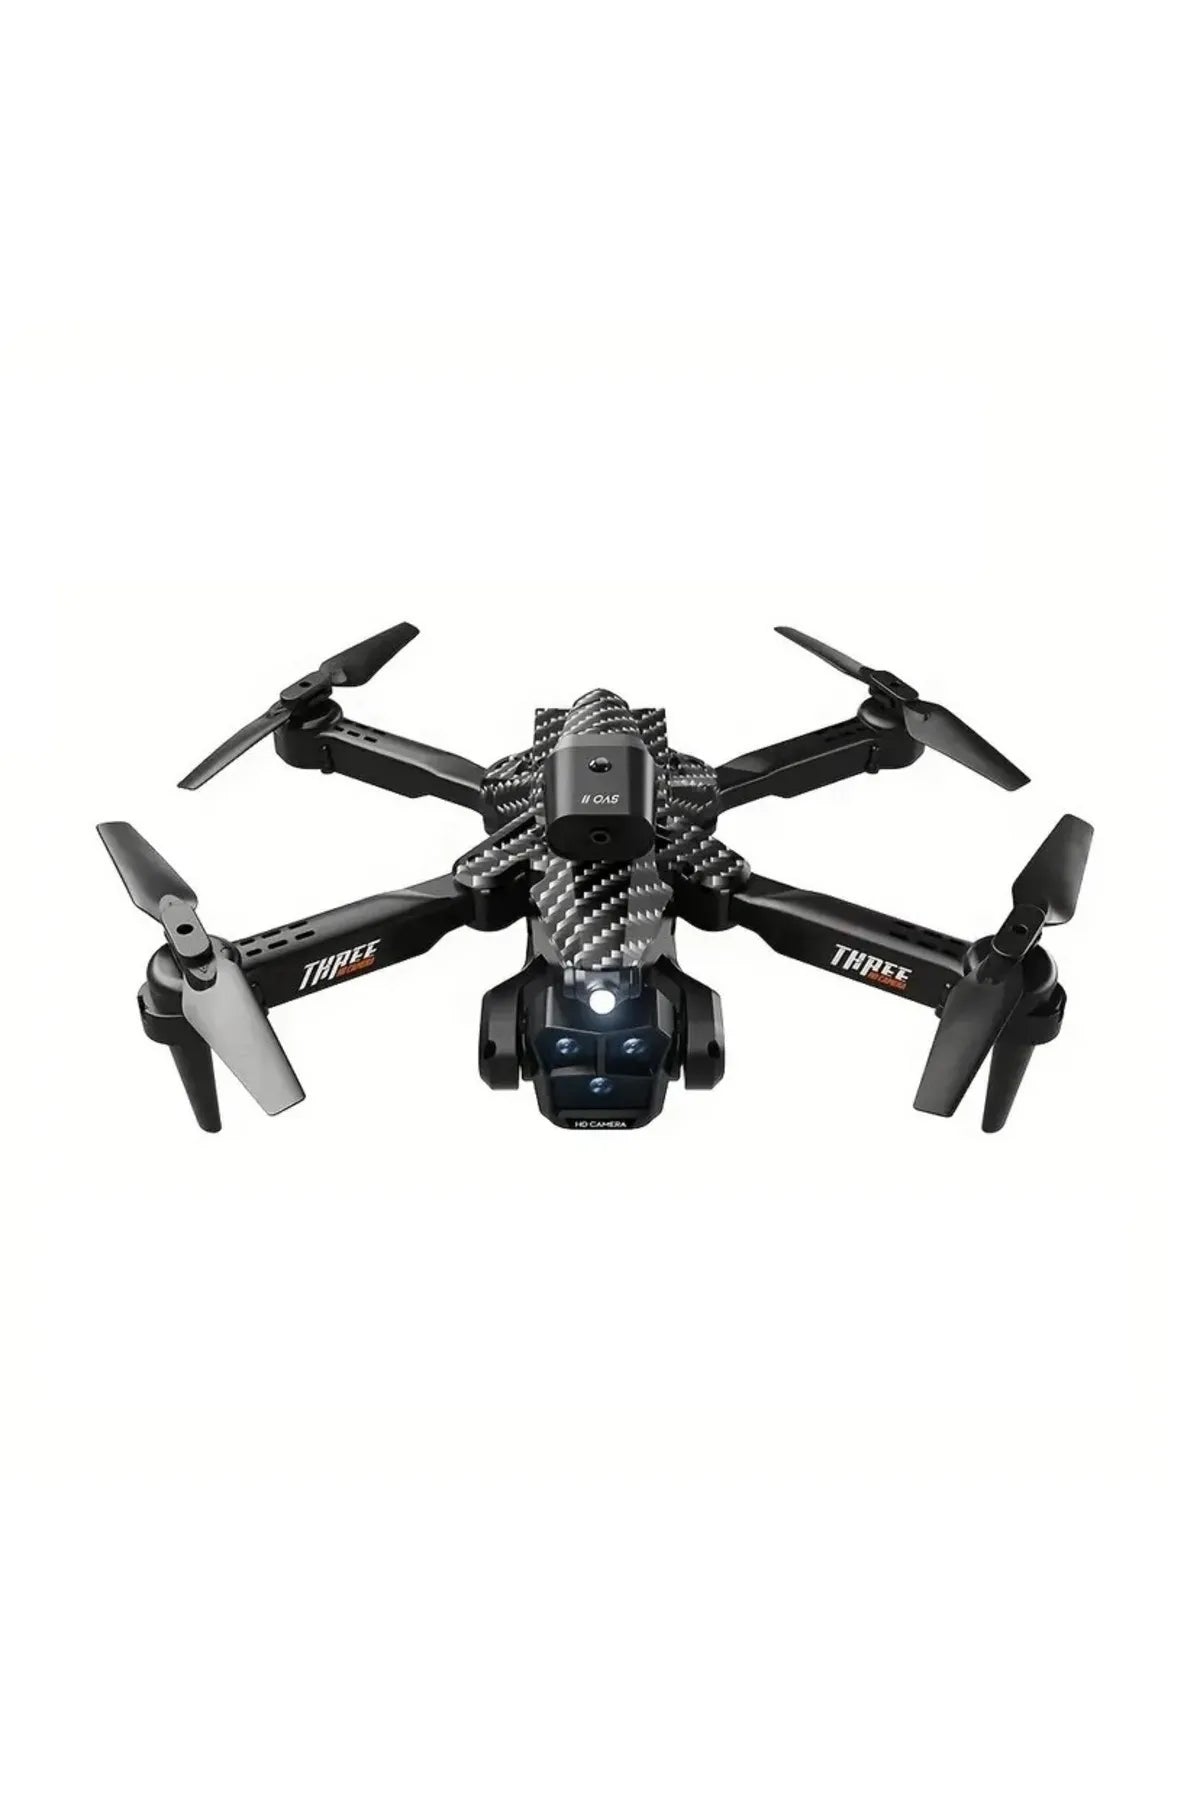 K10 MAx Drone - Cámara 4k HD Evitación de obstáculos Fotografía aérea Sin escobillas Plegable Quadcopter Regalos Juguetes